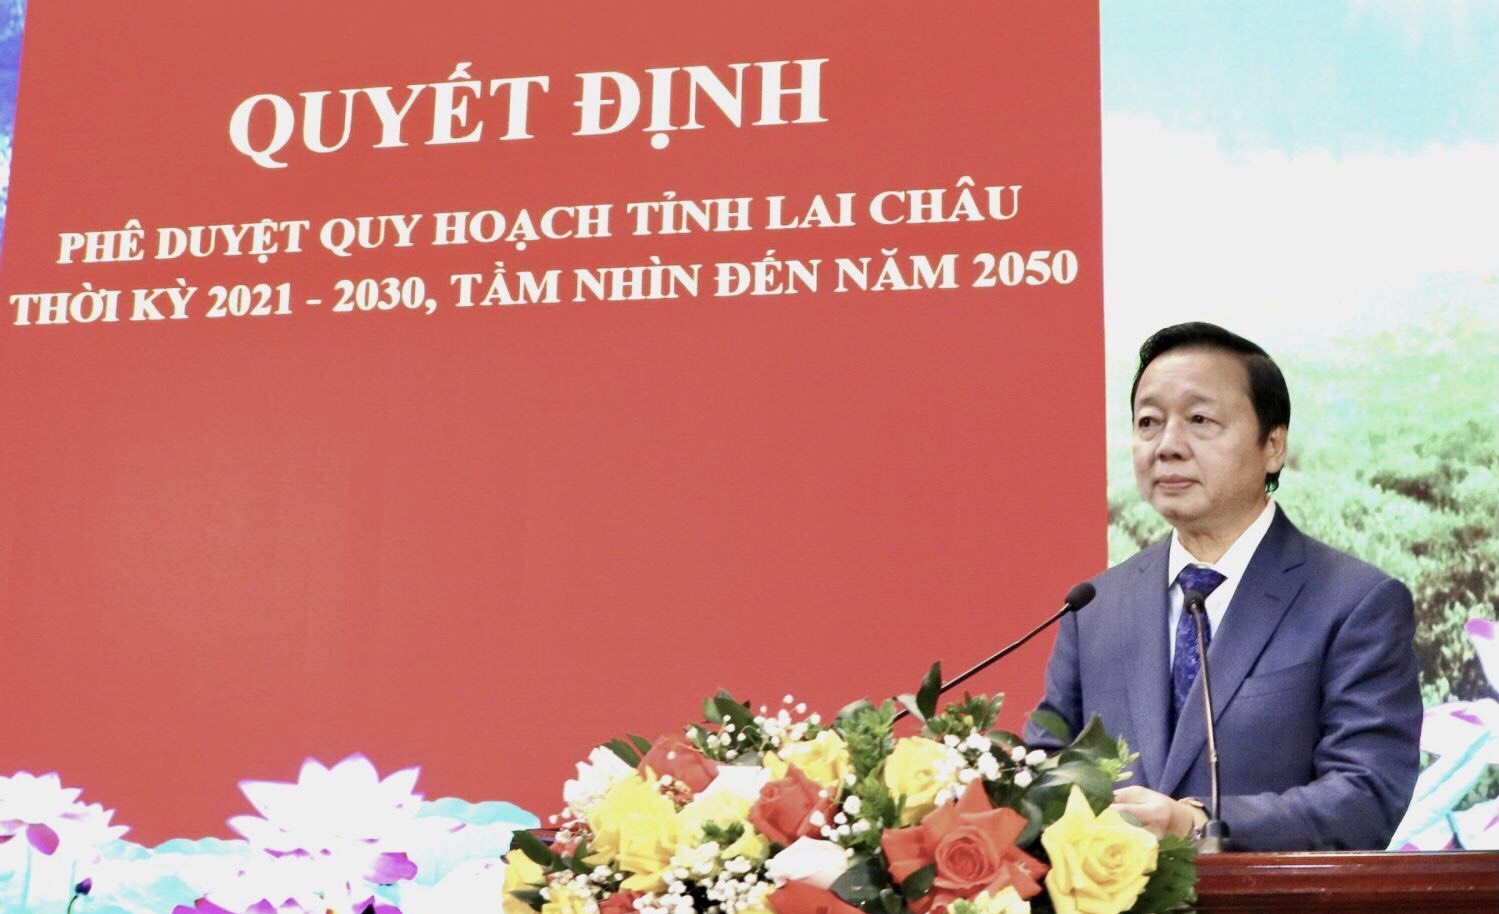 Phó Thủ tướng Chính phủ Trần Hồng Hà phát biểu chỉ đạo tại Hội nghị công bố Quy hoạch tỉnh Lai Châu thời kỳ 2021 - 2030, tầm nhìn đến năm 2050 cho lãnh đạo tỉnh Lai Châu. (Ảnh: laichau.gov.vn)